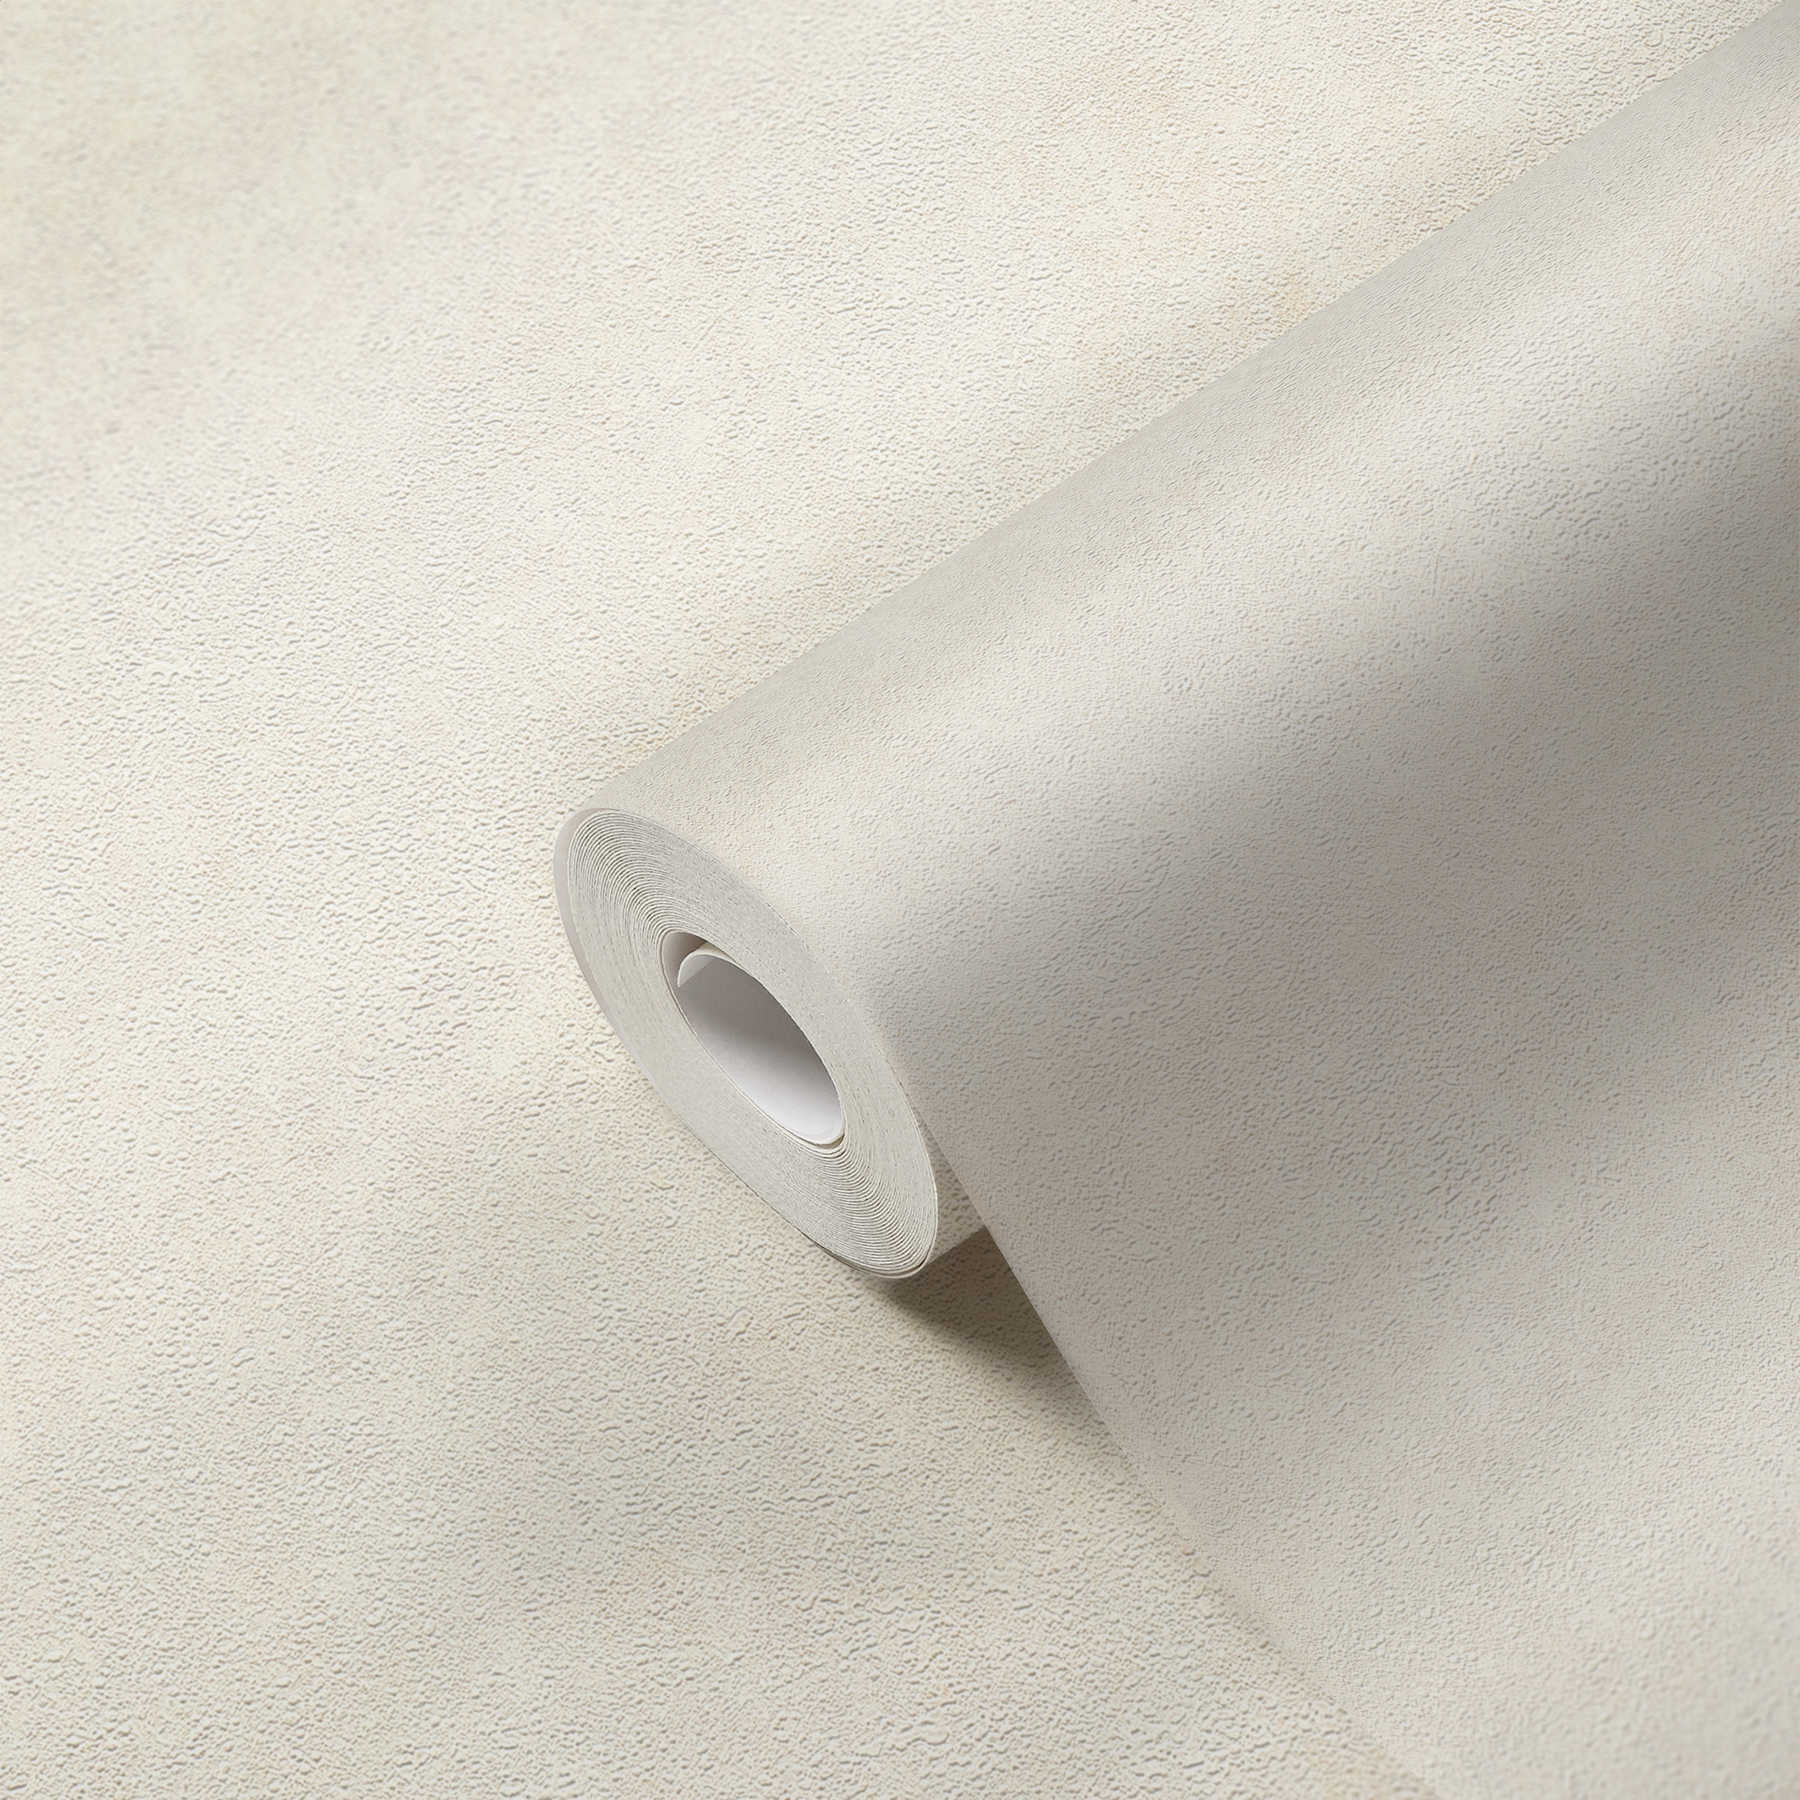             Papel pintado no tejido con ligeros toques de brillo - crema, blanco
        